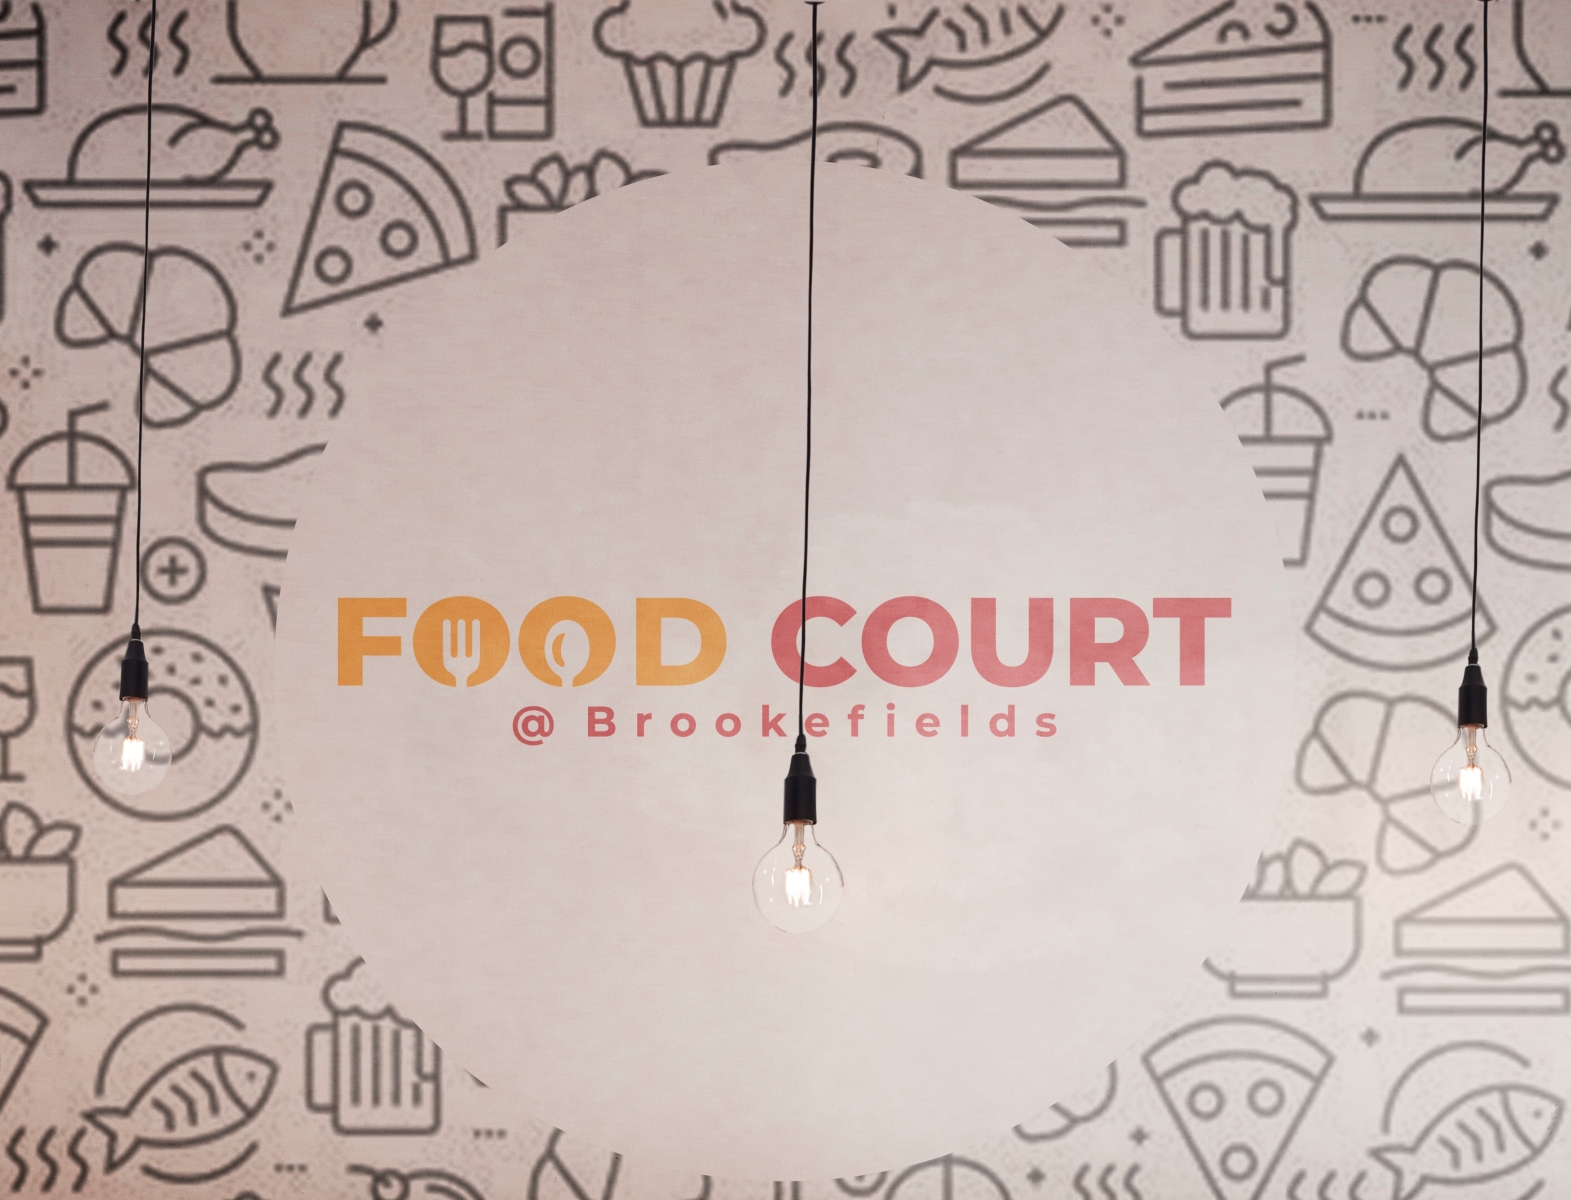 Set of vintage restaurant or food court logo Vector Image